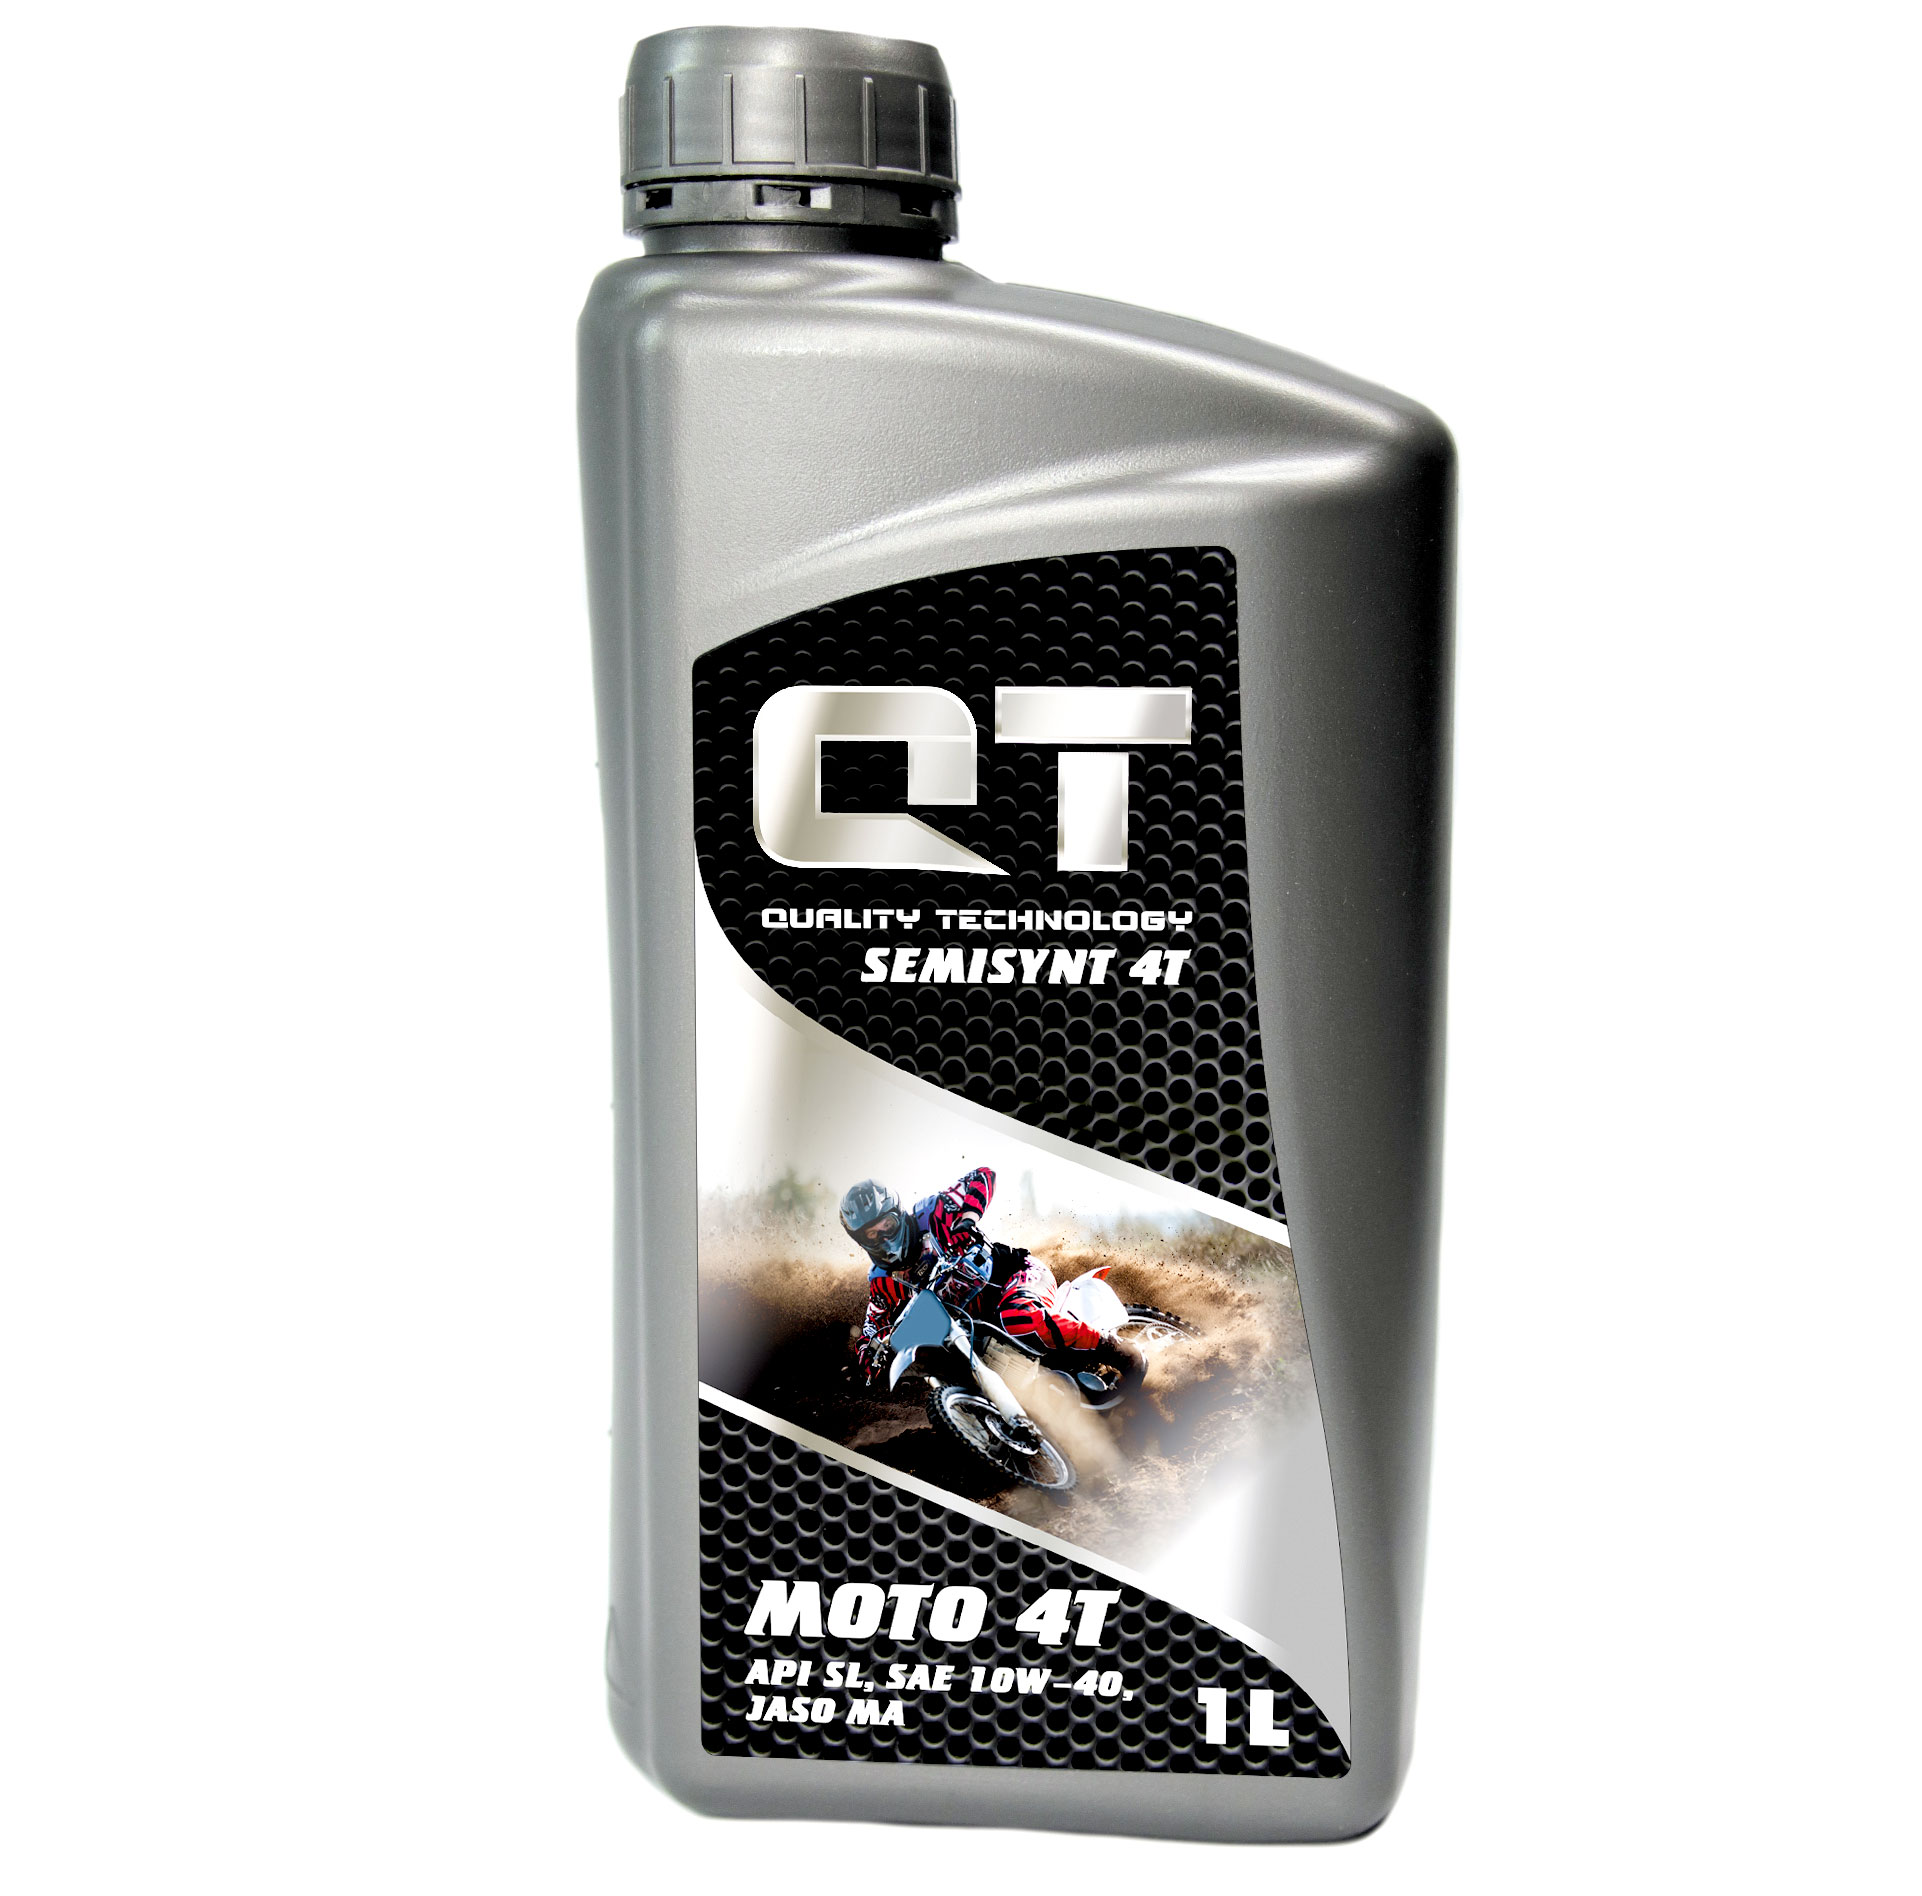  Купить Моторное масло Semisynt 4T 1 лQT-oil QT1641001   